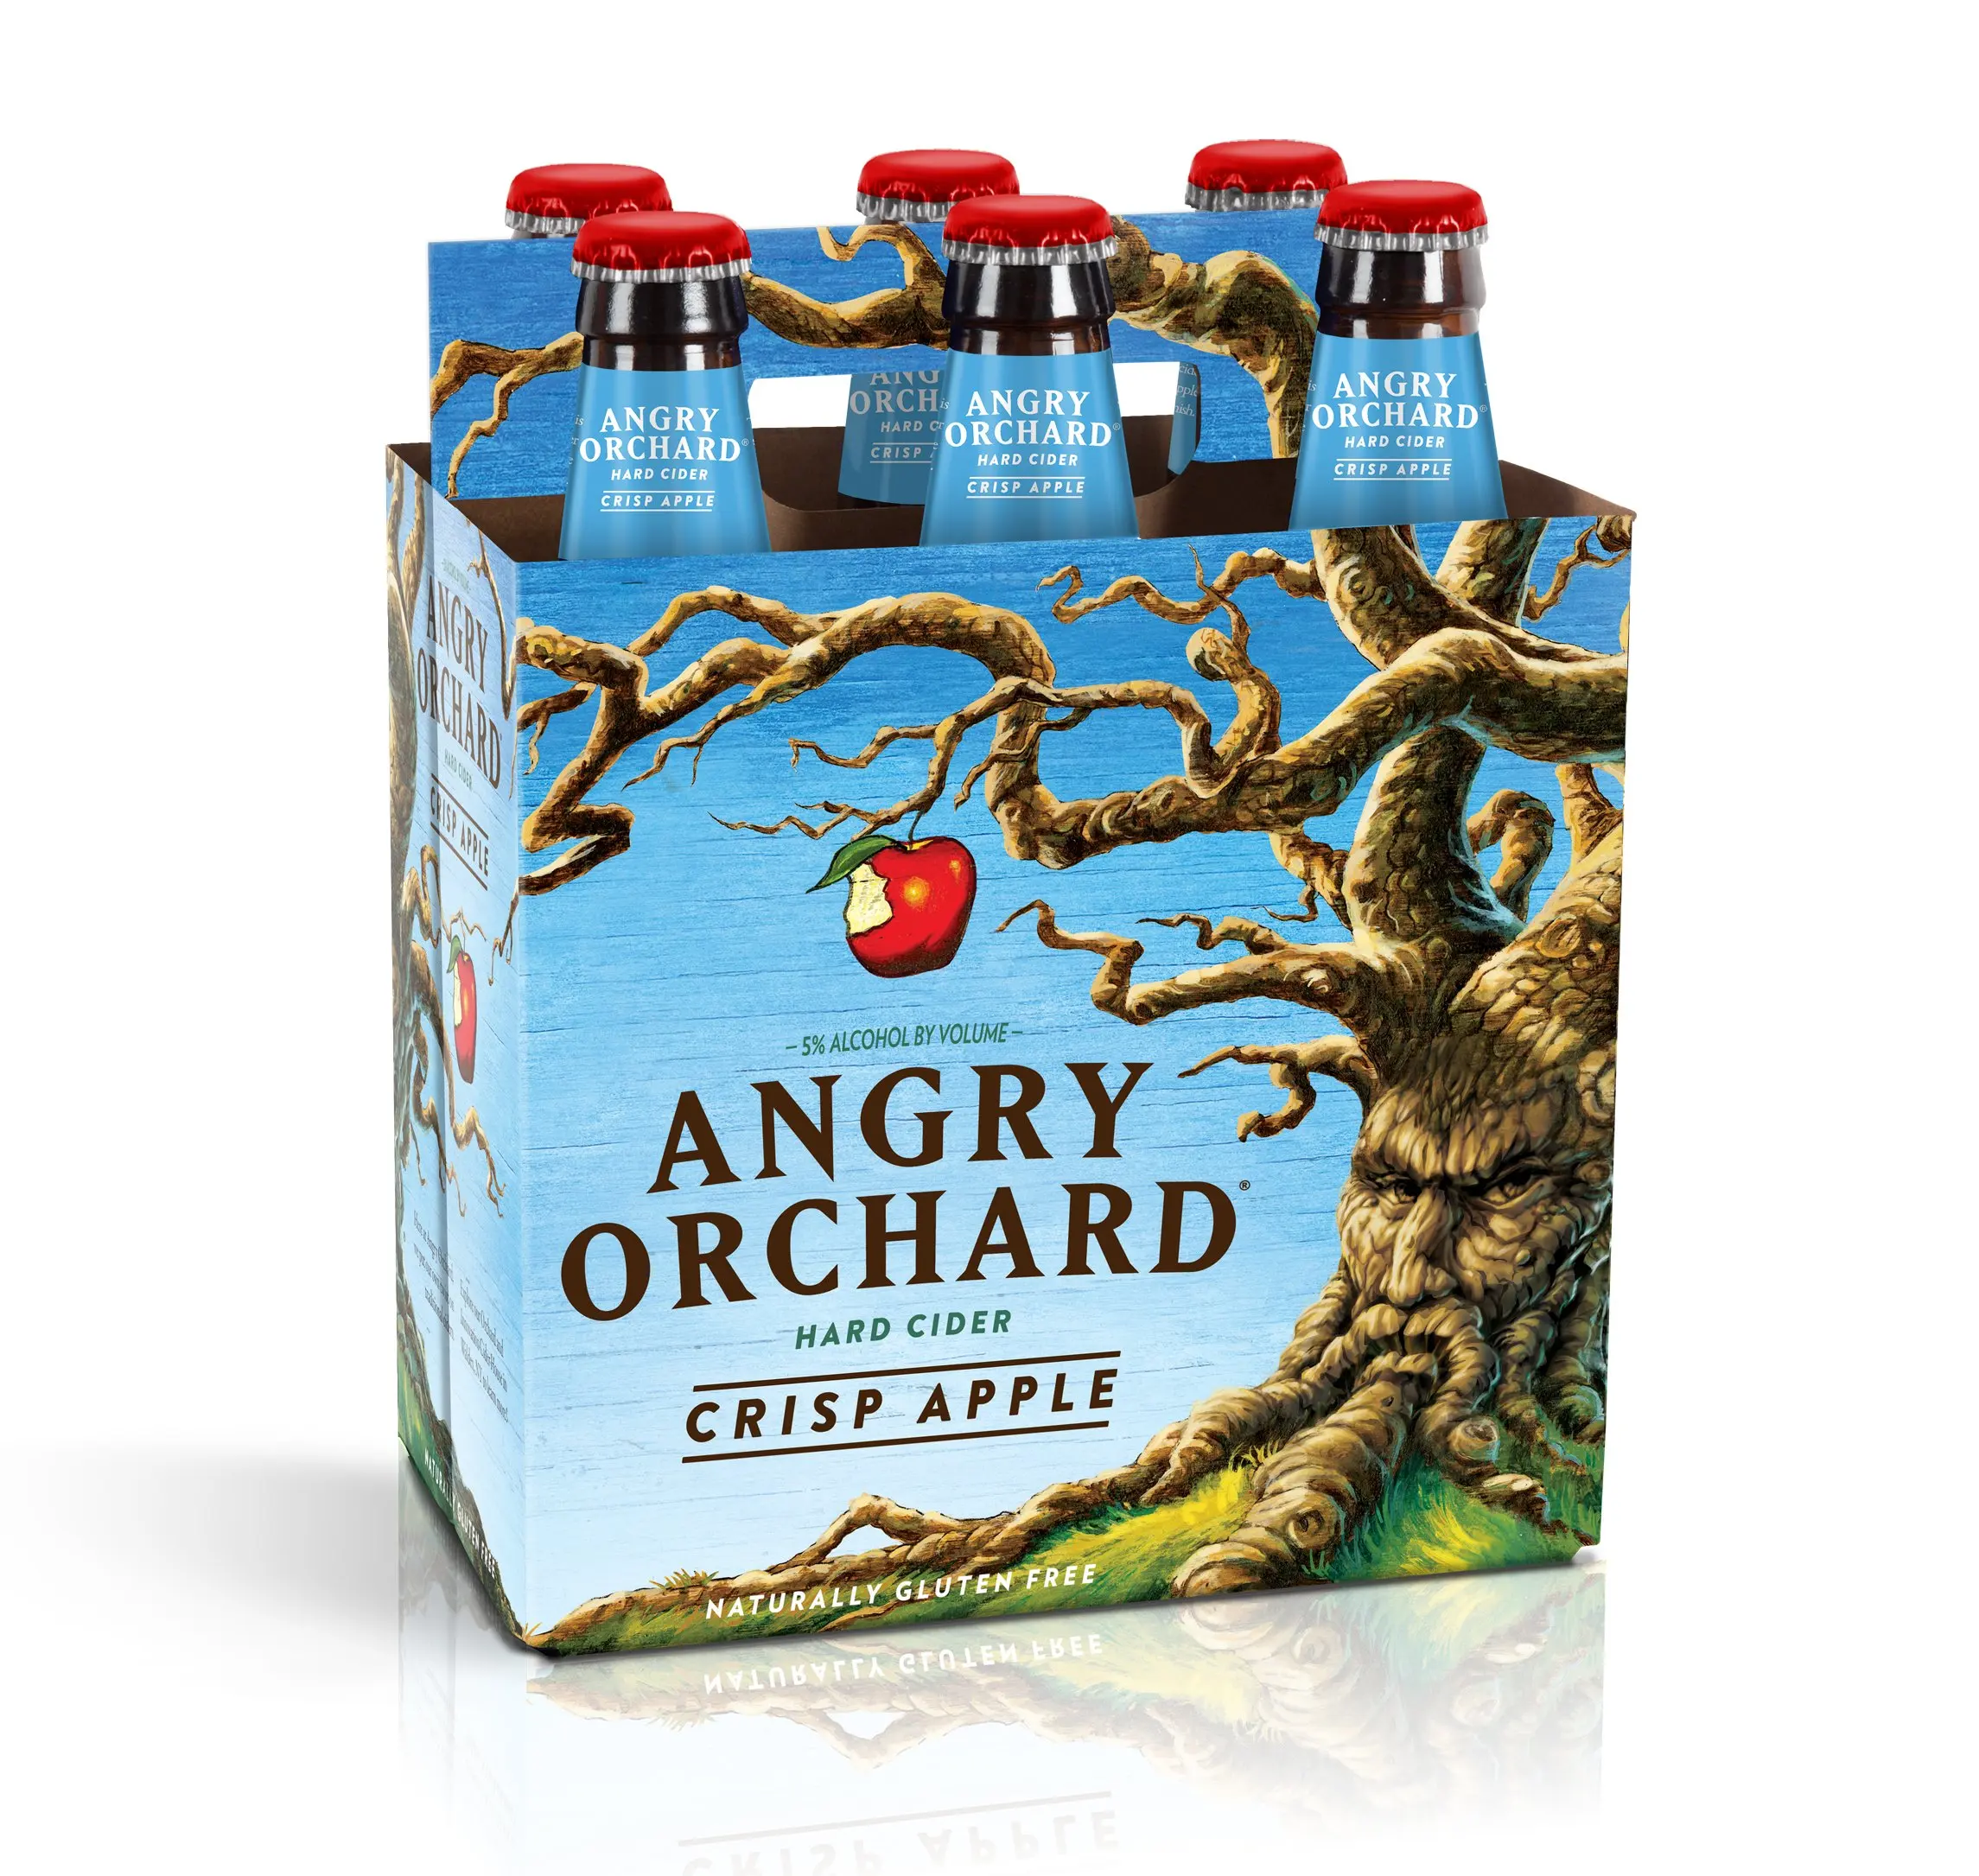 Angry Orchard Crisp Apple Cider, 6 pk, 12 oz bottles, 5.0% ABV. 